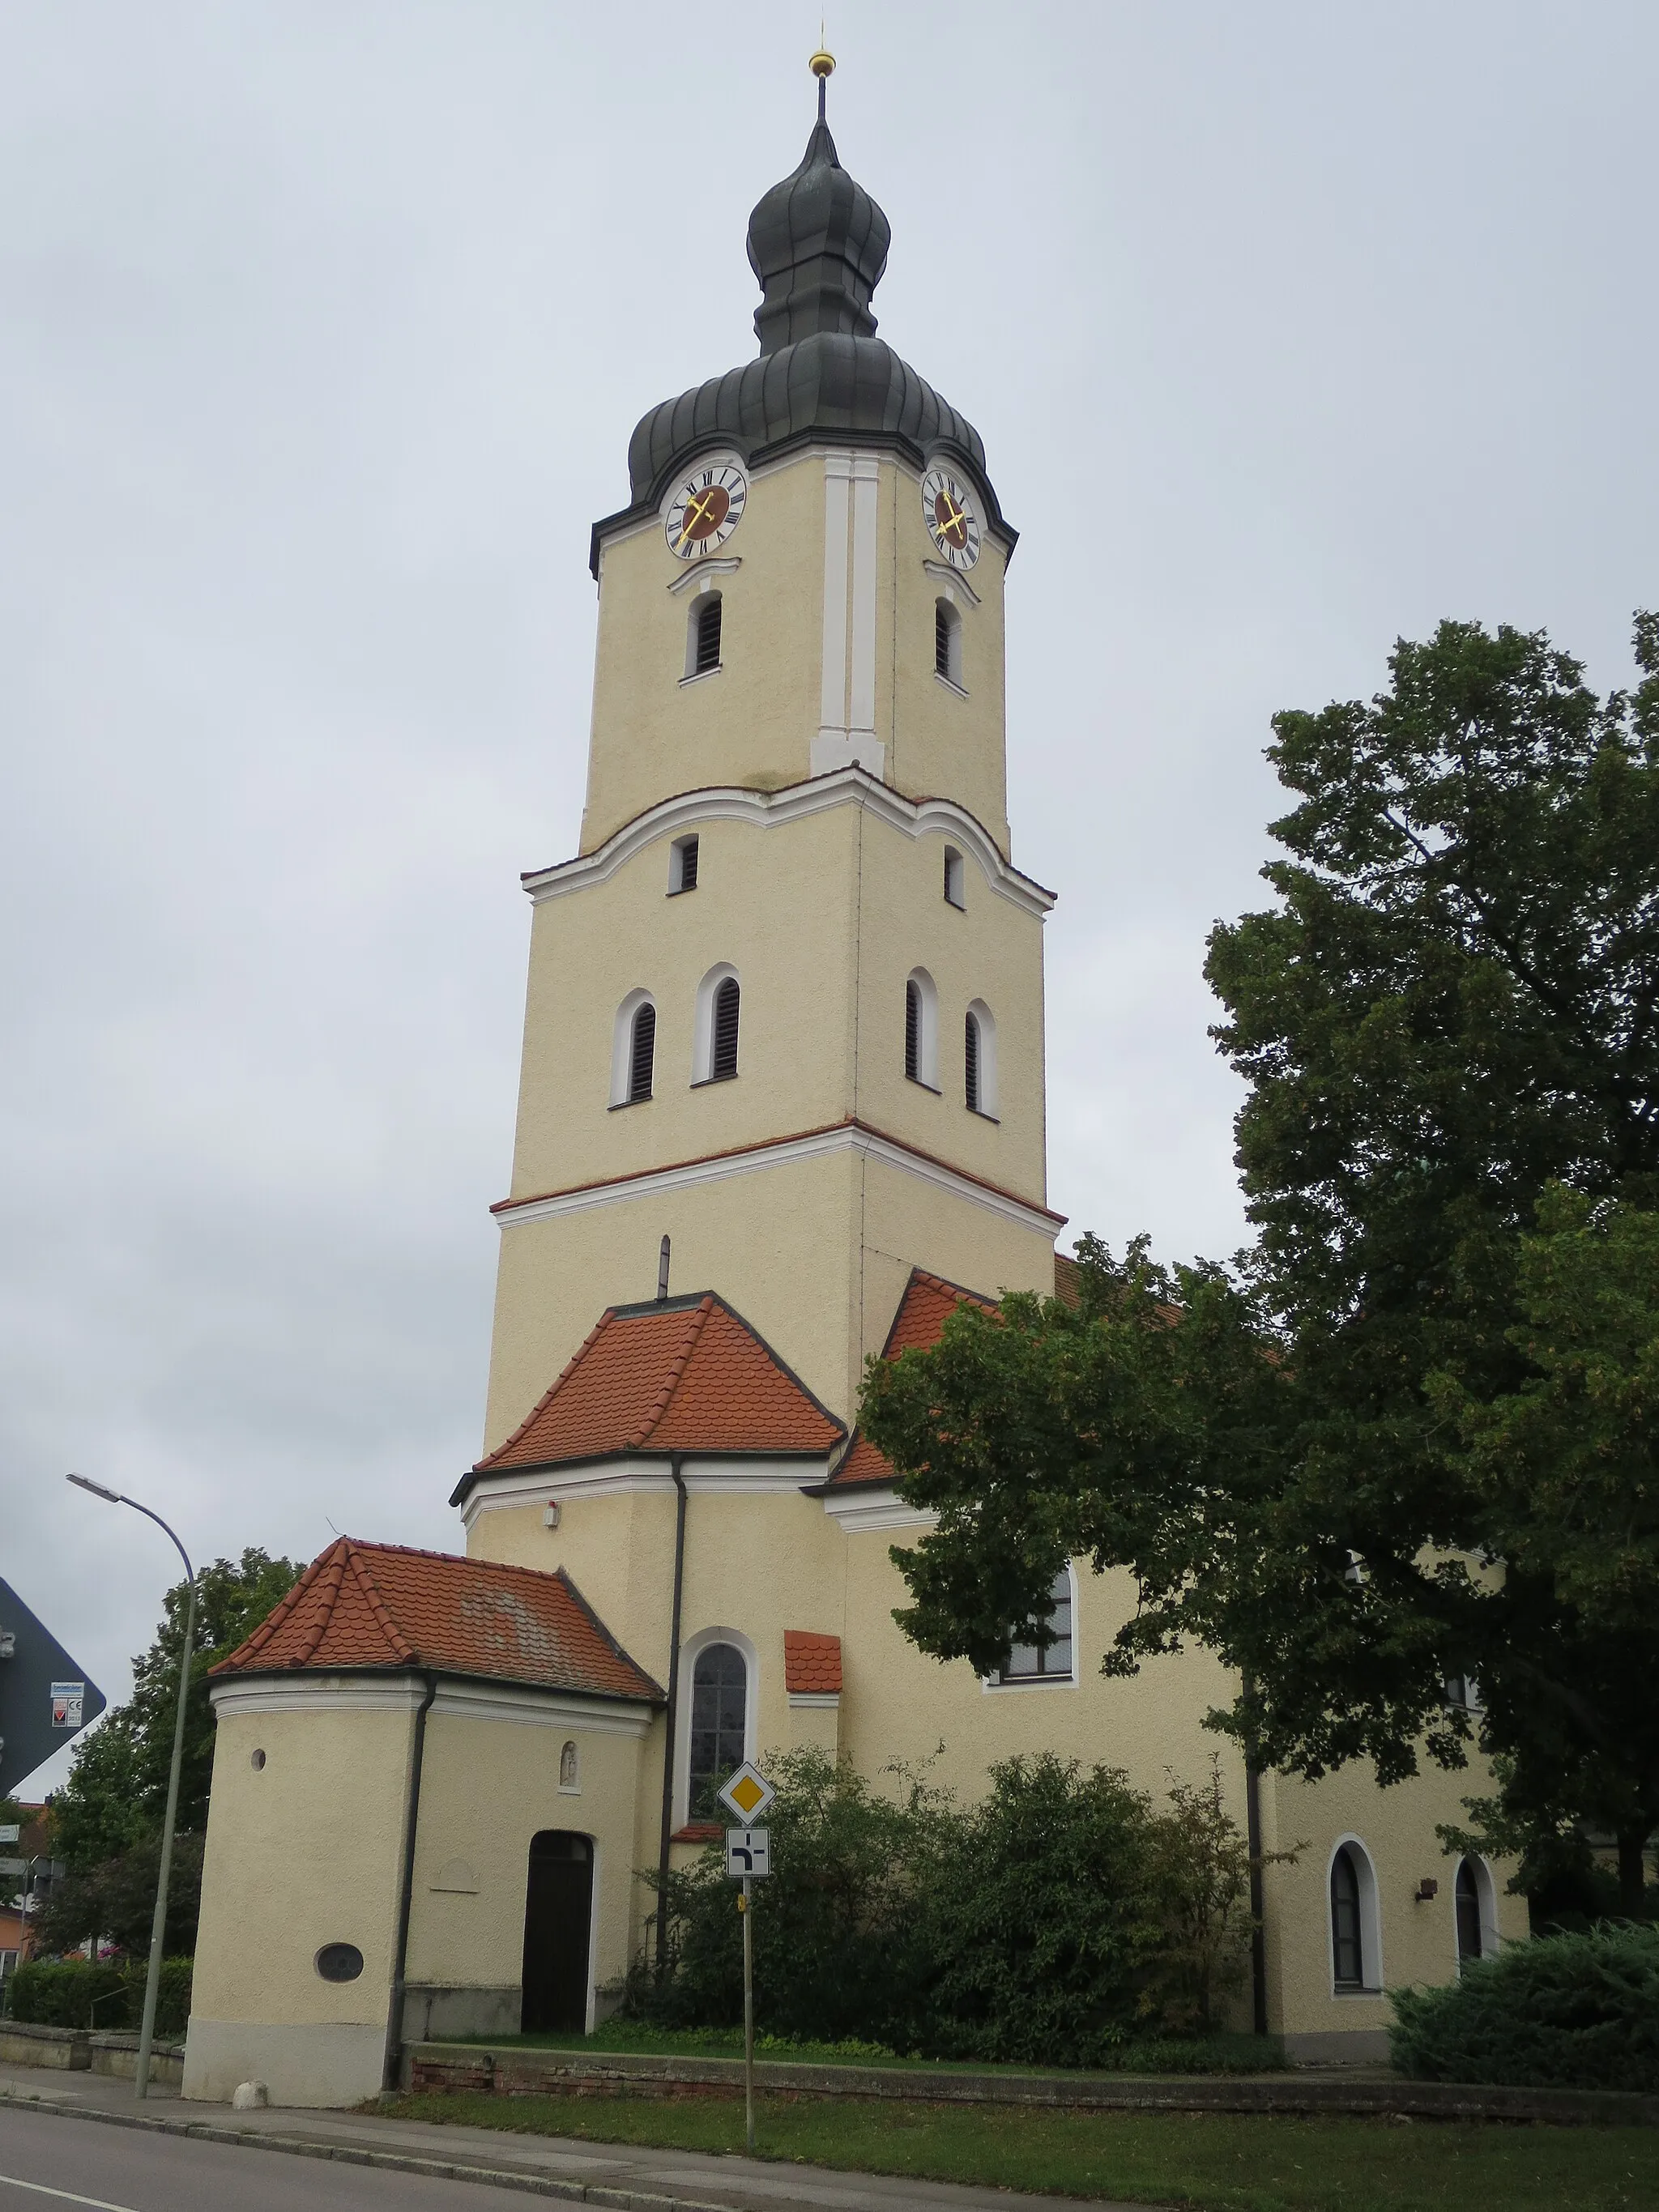 Photo showing: Katholische Pfarrkirche St. Blasius in Zuchering.